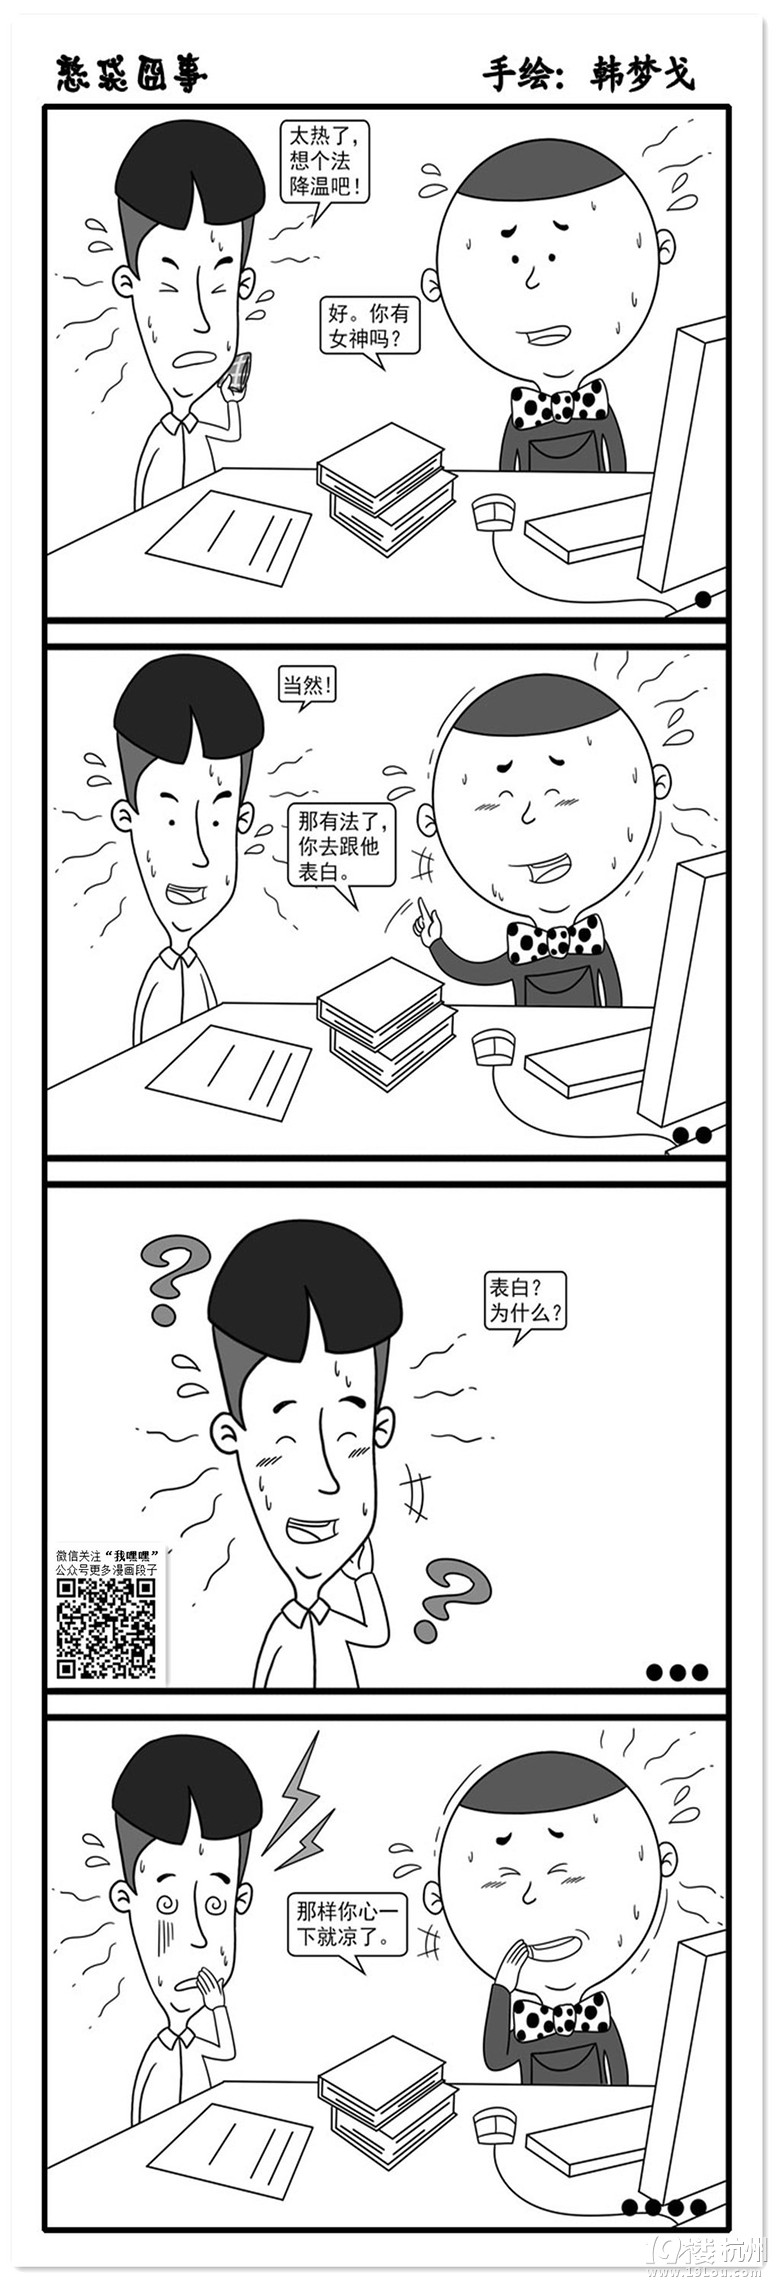 幽默漫画--降温-爆笑堂-口水乐园-杭州19楼